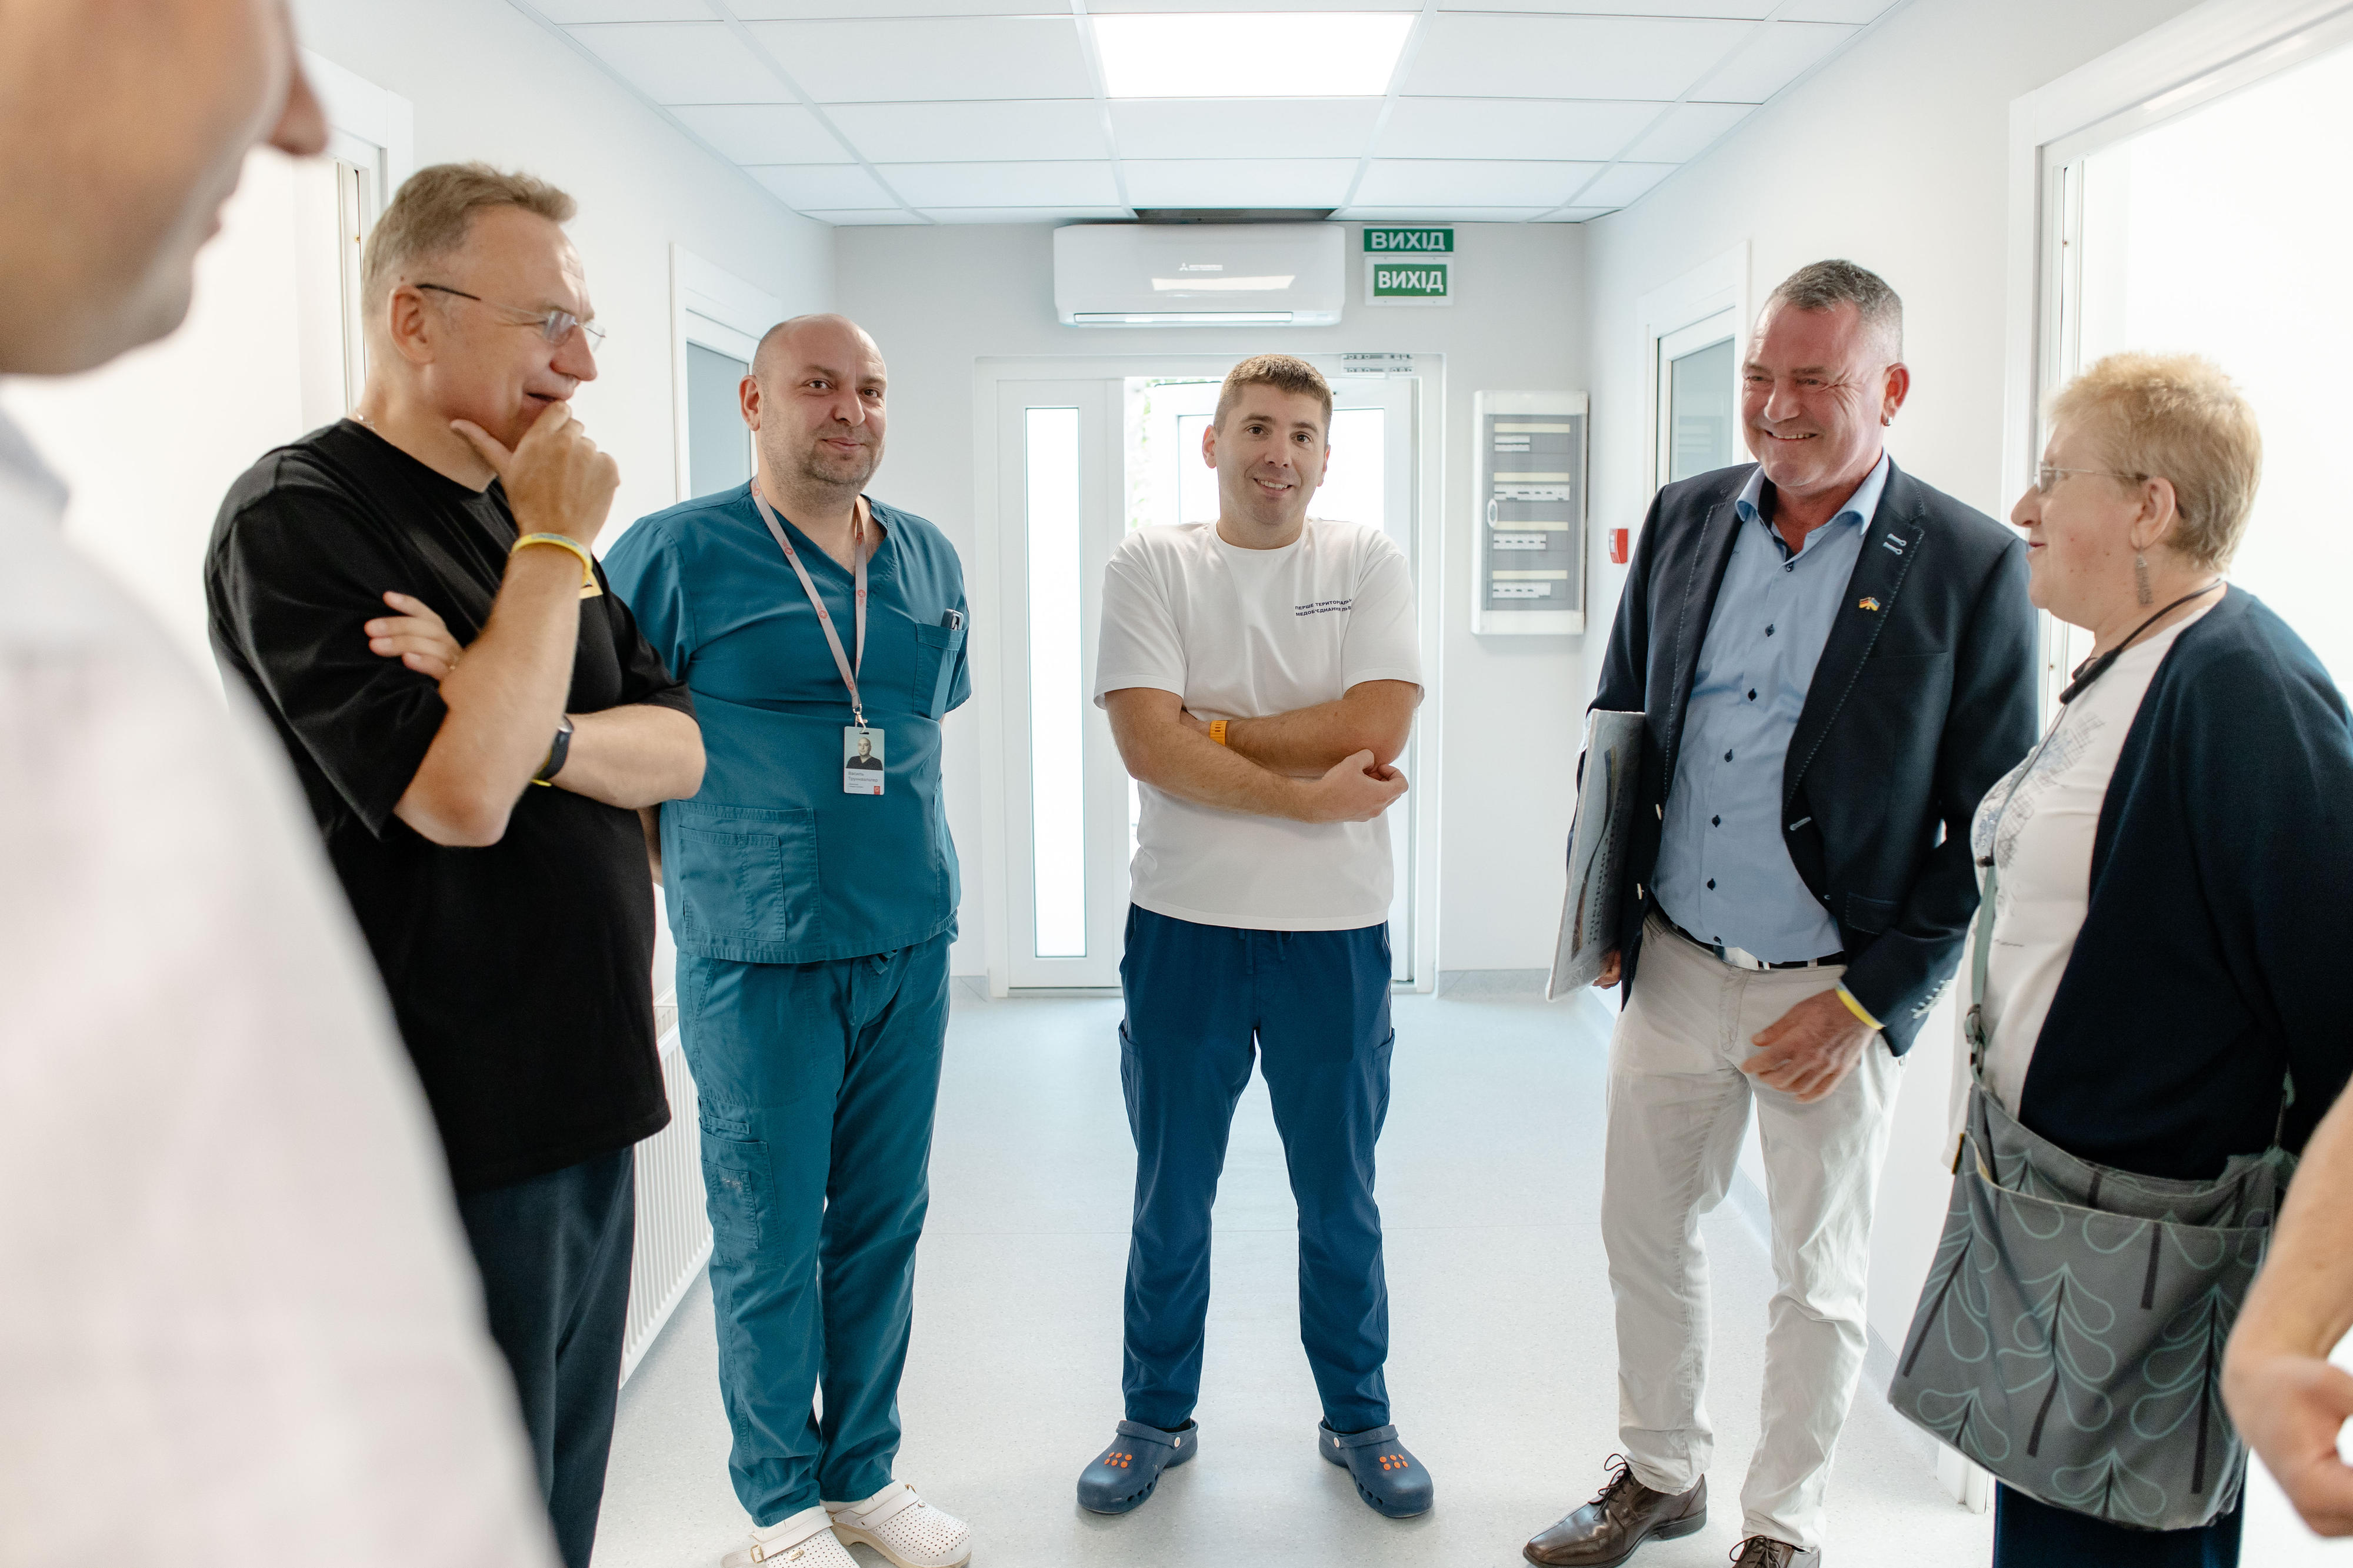 Klinikleiter V. führt Besucher durch das neue modulare Diagnostikzentrum und die Krankenhauserweiterung in Lwiw.